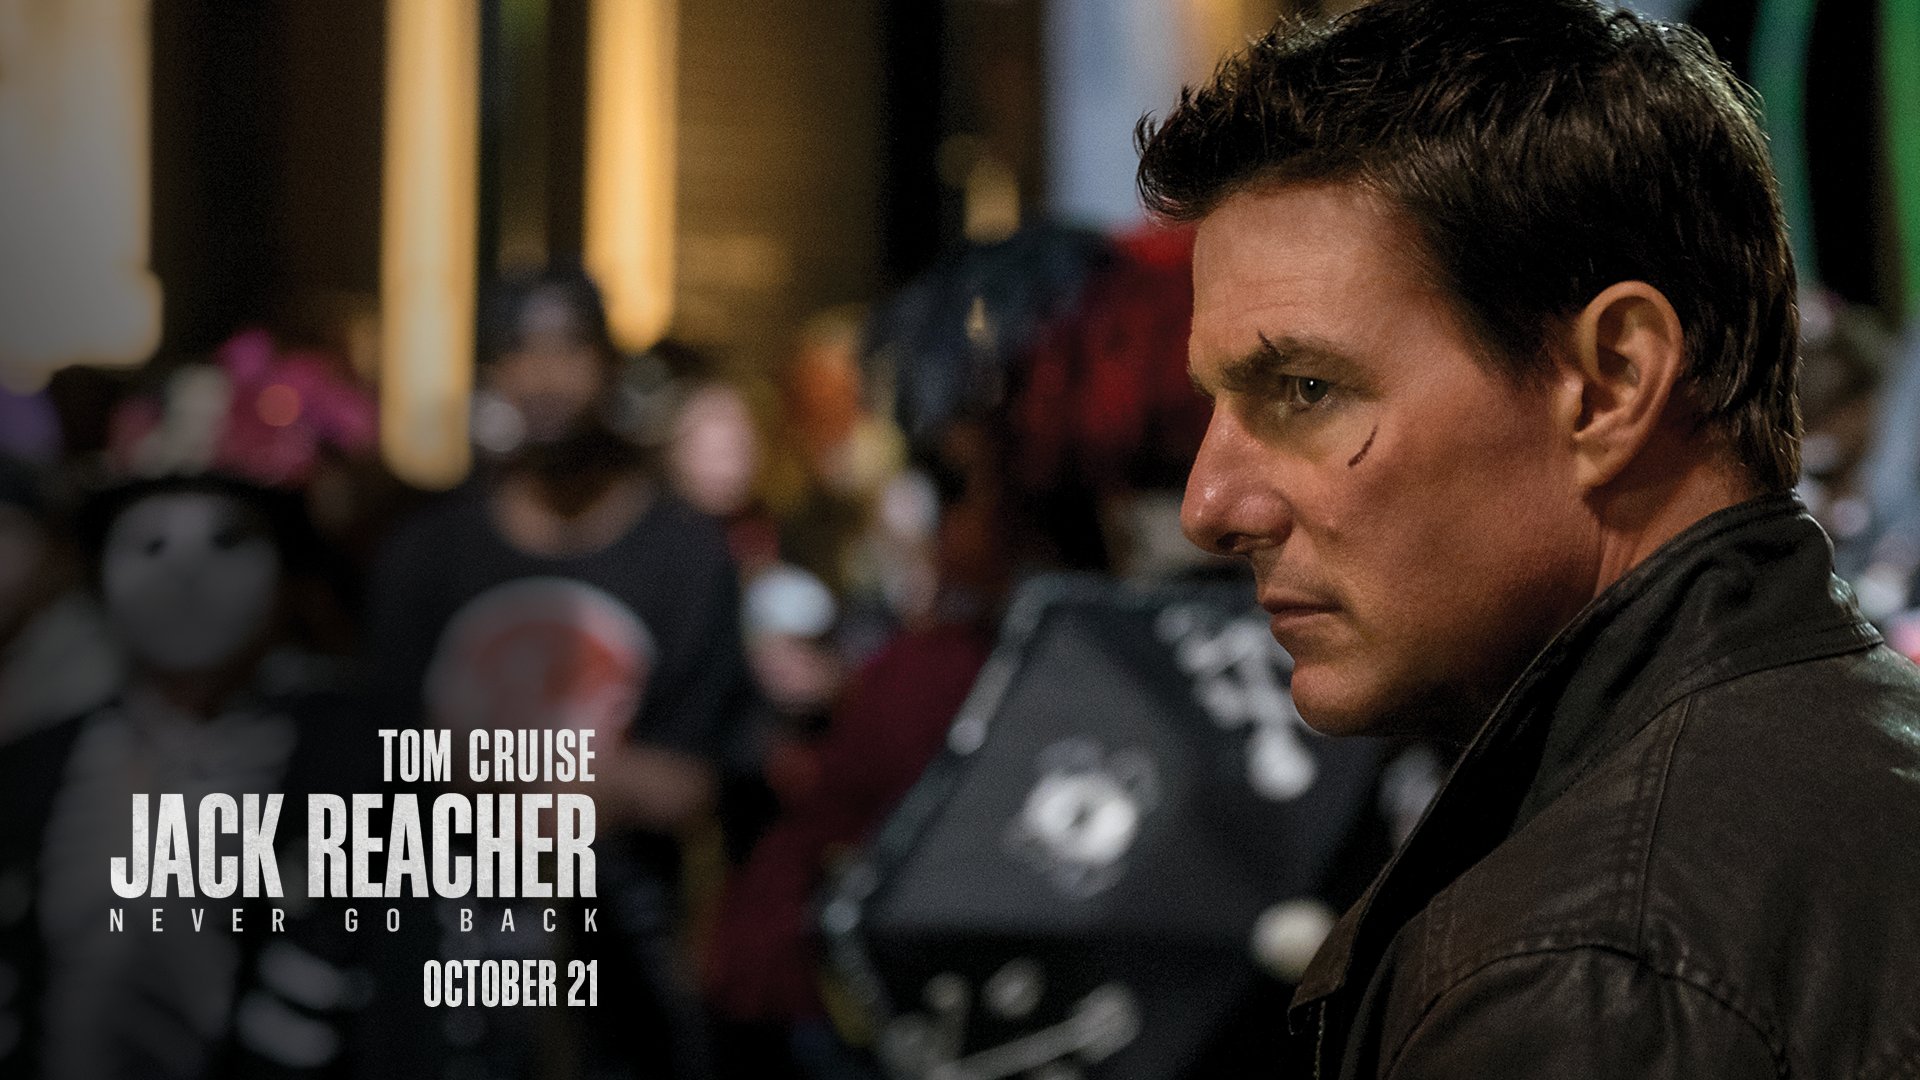 JACK REACHER 2: NEVER GO BACK Trailer (Tom Cruise - 2016) 